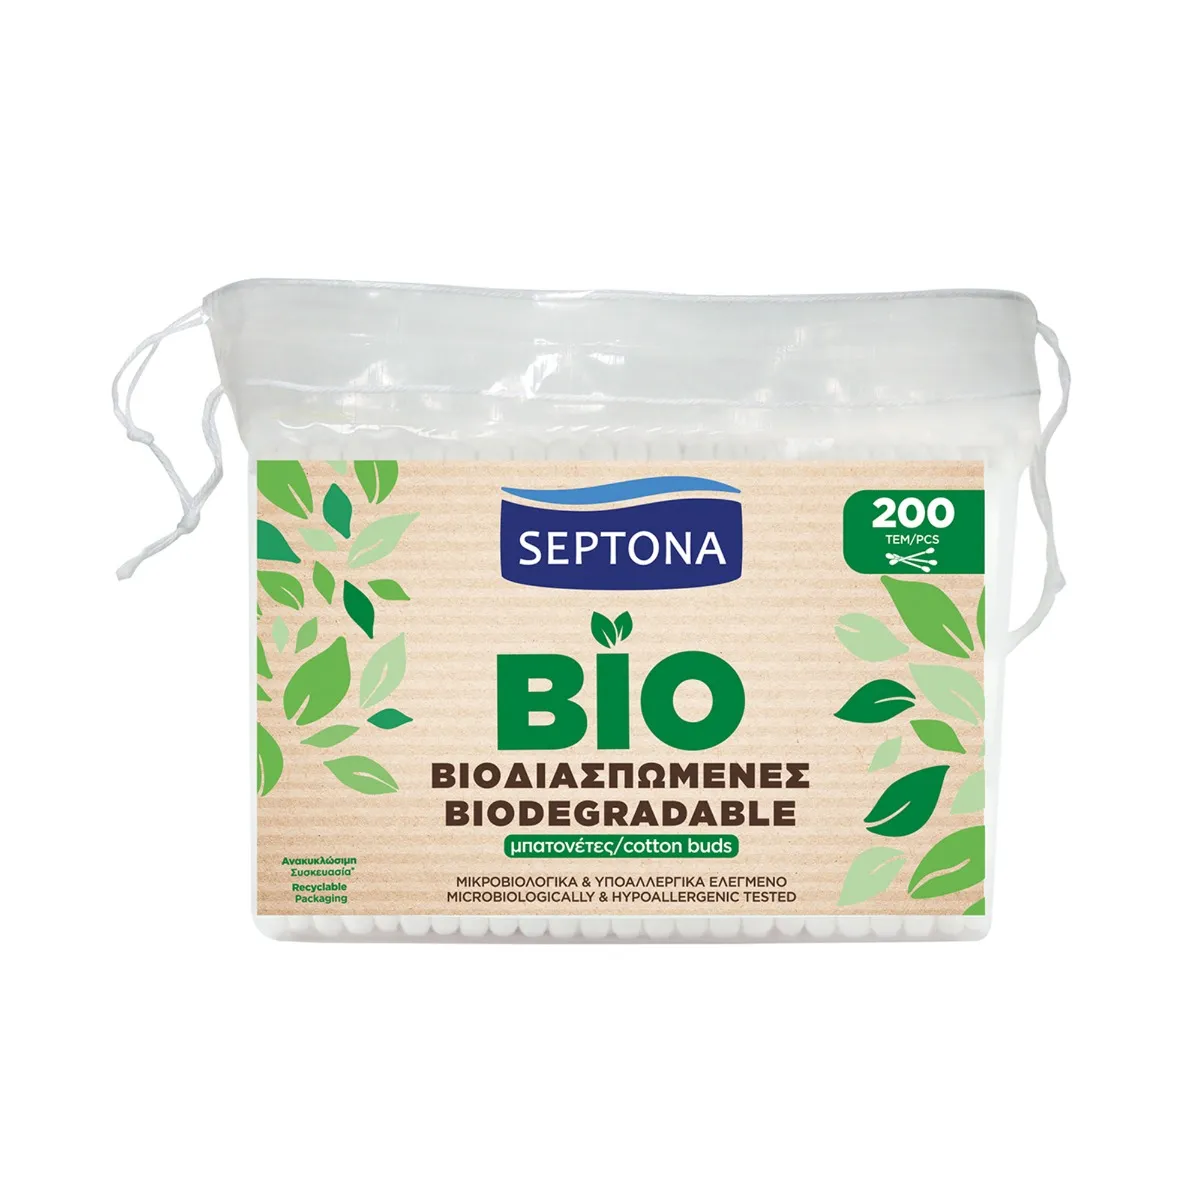 Septona Ecolife Patyczki higieniczne biodegradowalne, 200 szt.